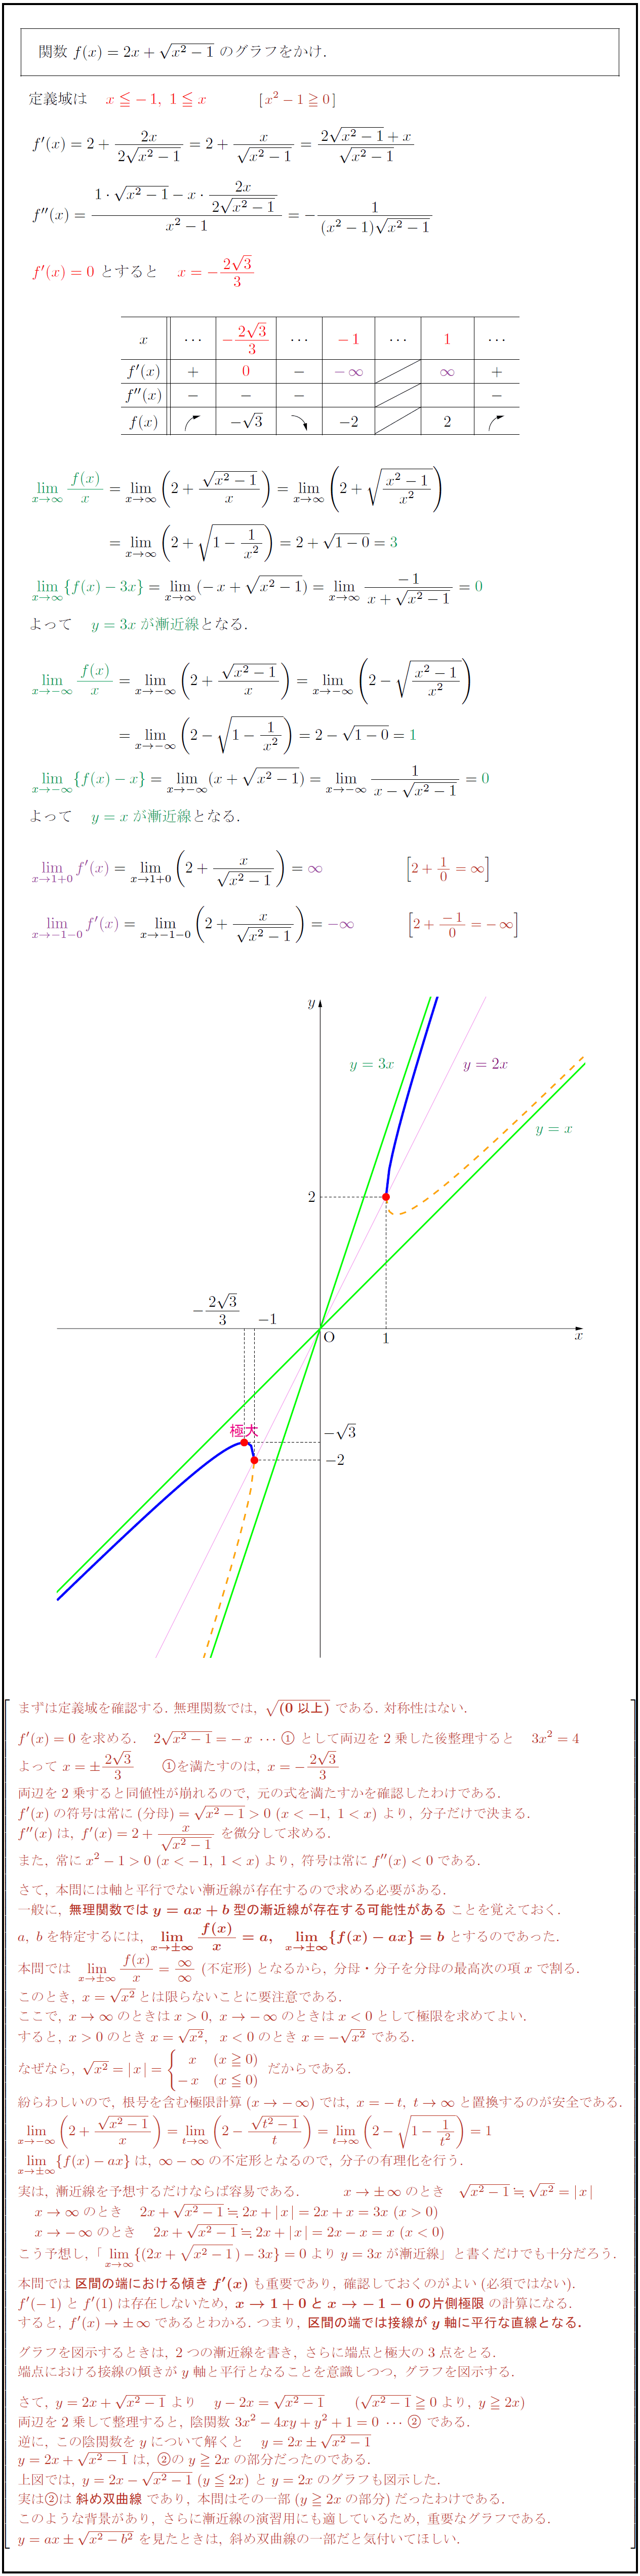 高校数学 無理関数 Y 2x X 1 のグラフ 斜め双曲線 受験の月